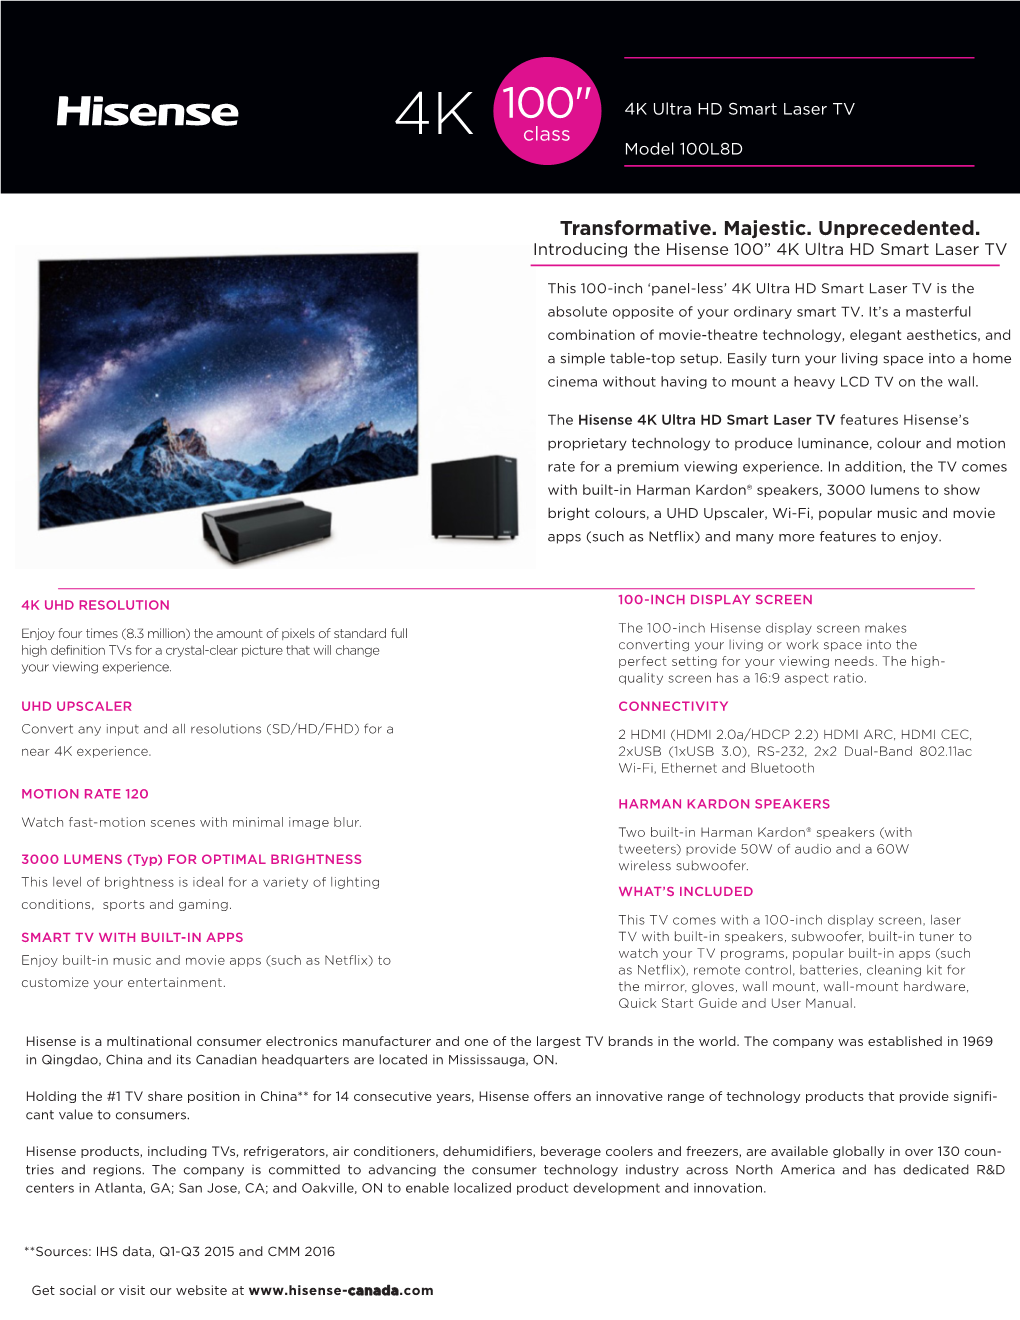 Hisense 100 Inch 4K UHD Smart Laser TV V1.0 Final 0 Download